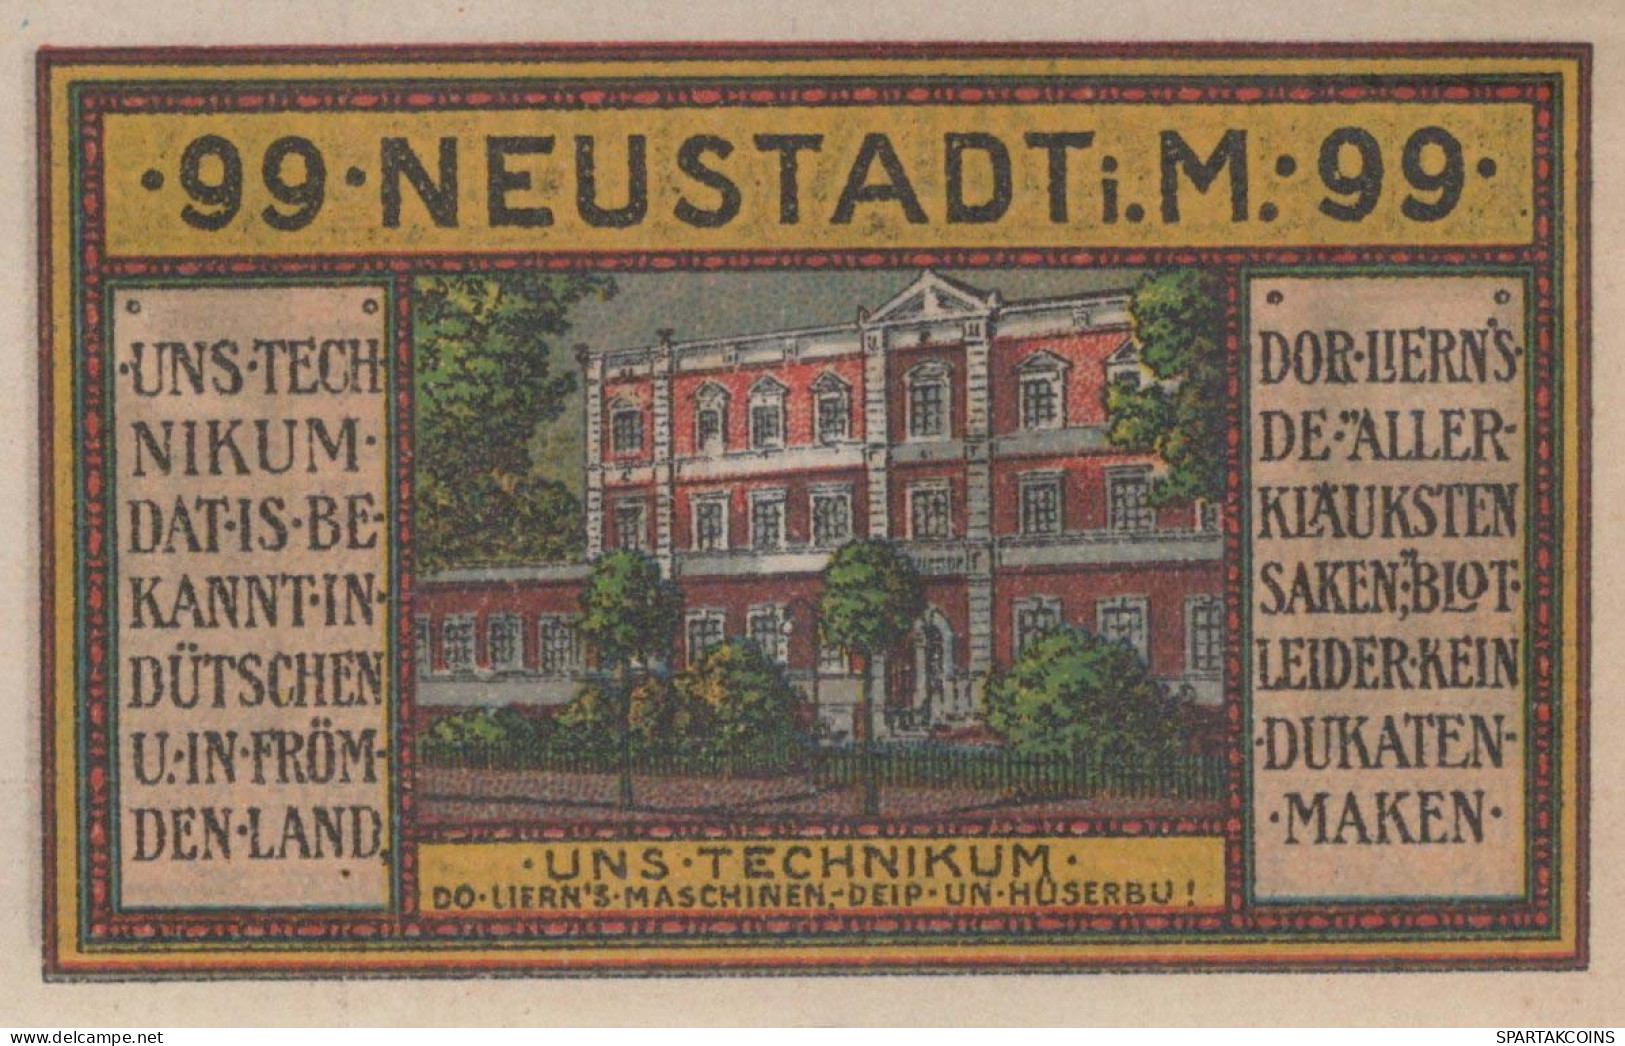 99 PFENNIG 1921 NEU IN MECKLENBURG Mecklenburg-Schwerin DEUTSCHLAND #PF667 - [11] Emisiones Locales